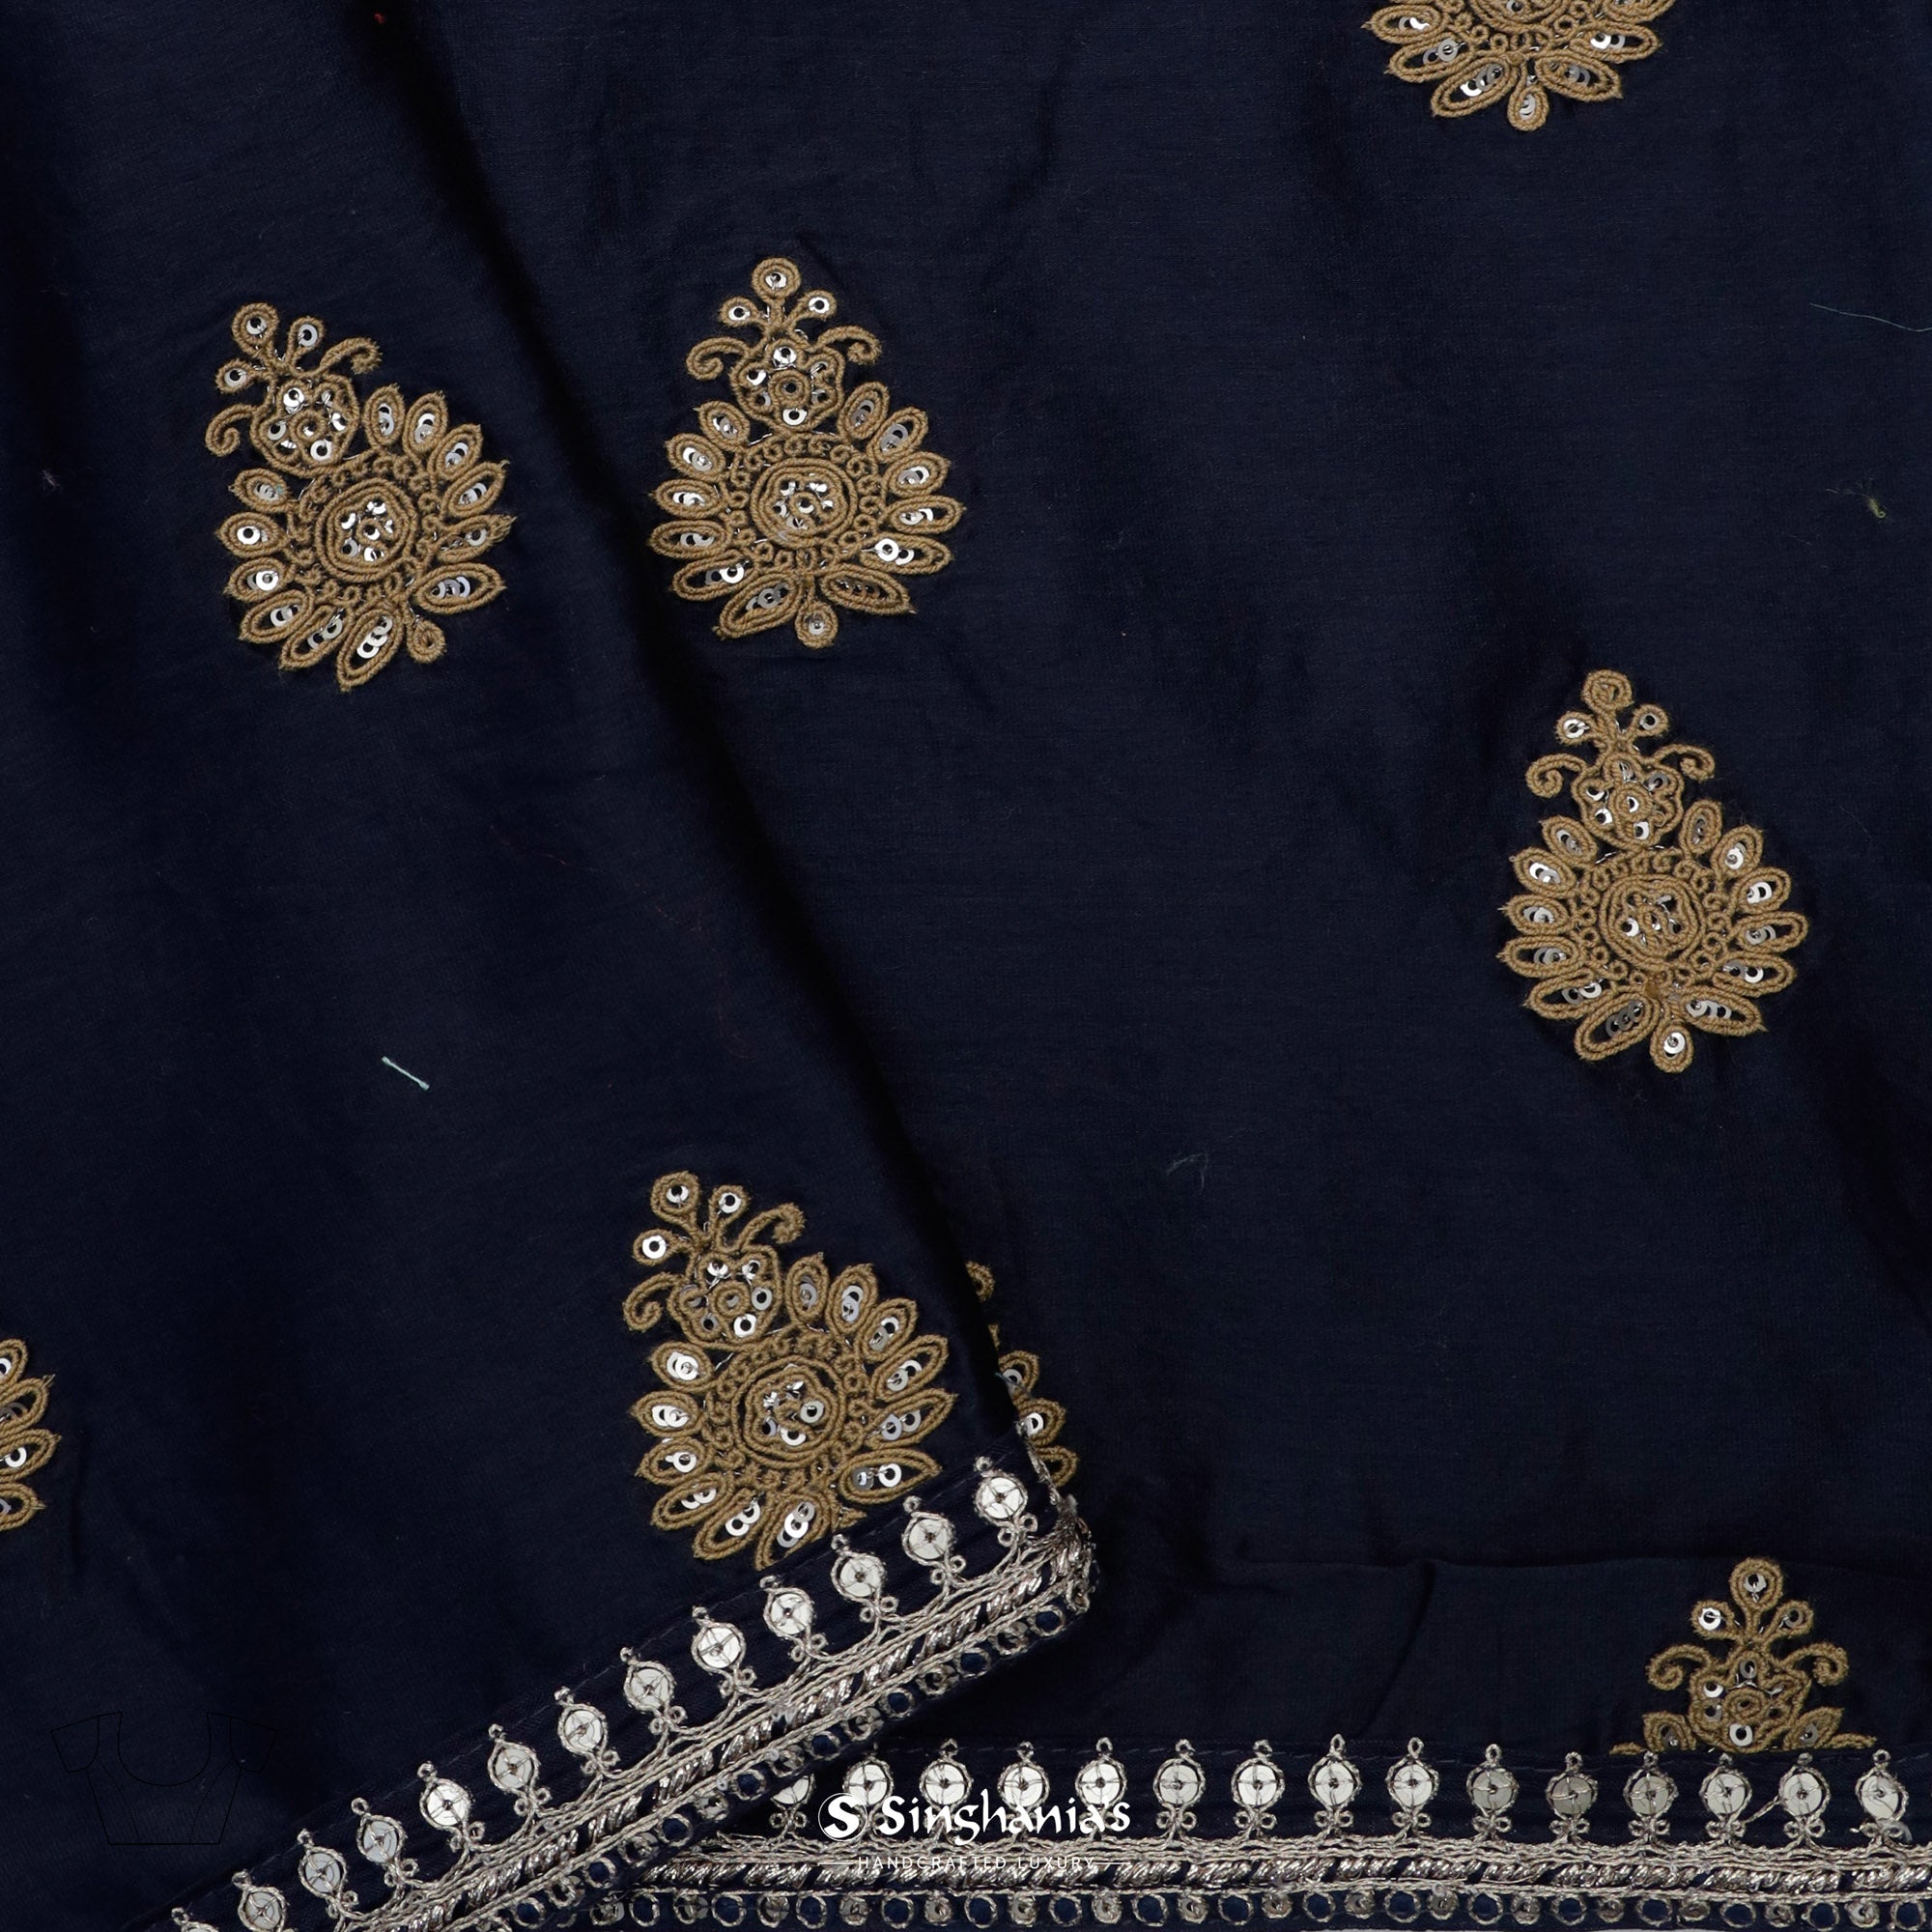 Indigo Blue Printed Organza Saree With Bandhani And Leheriya Pattern